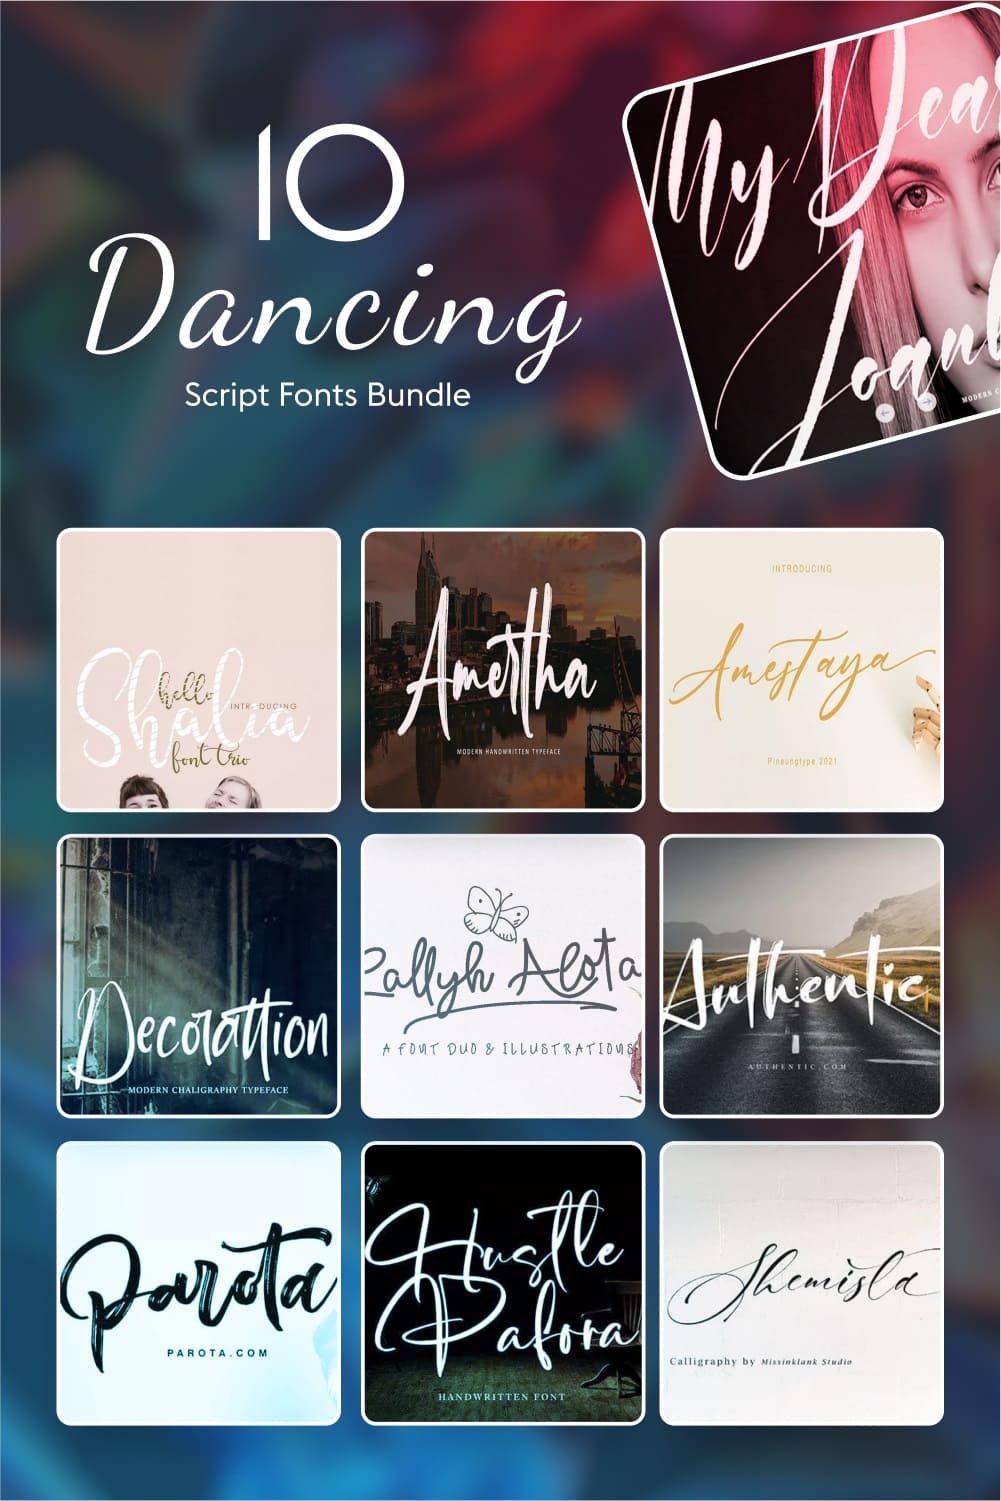 10 dancing script fonts bundle Pinterest collage image.